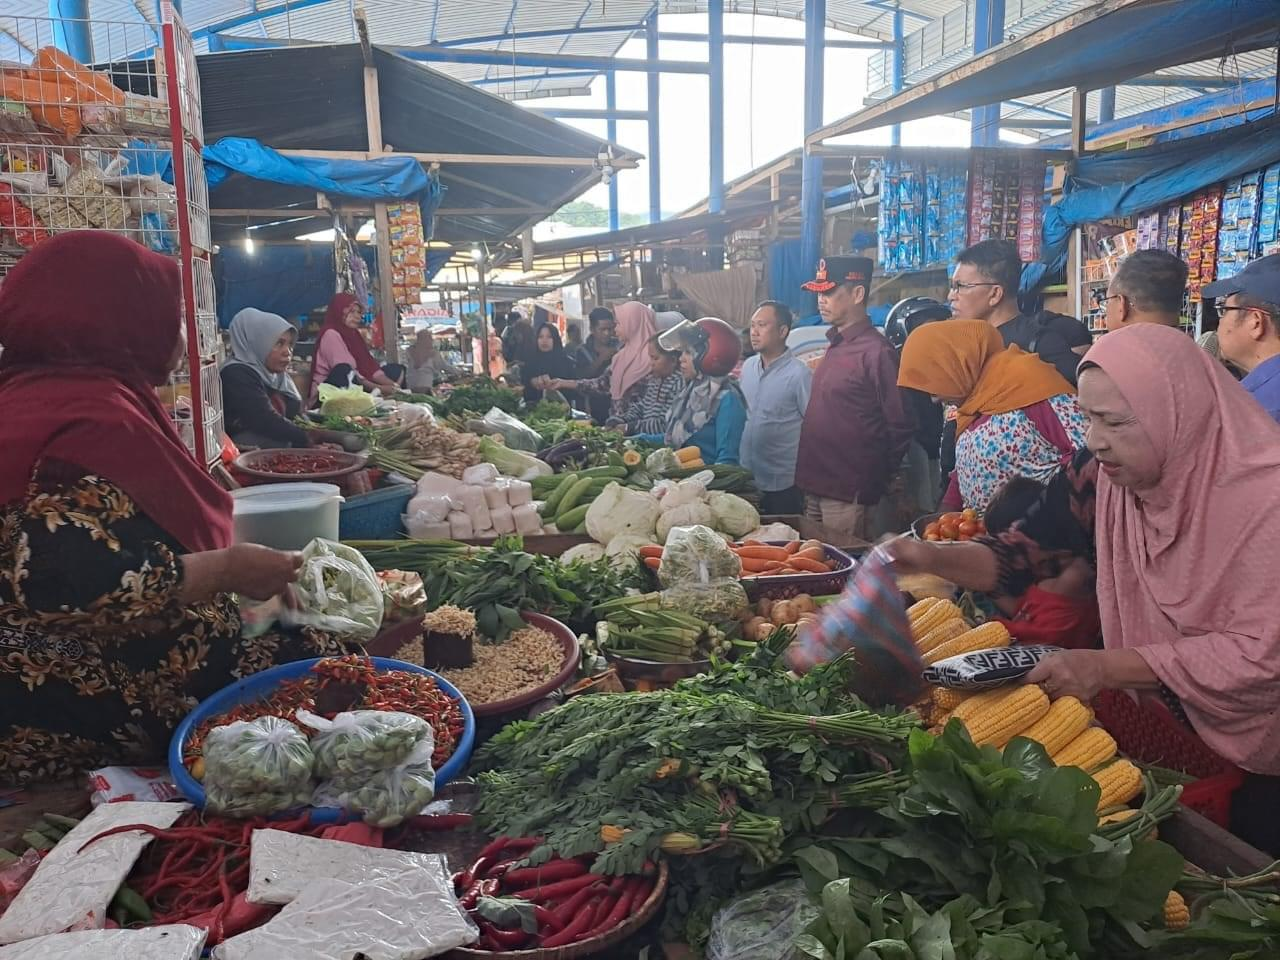 Sekda Bombana Man Arfa (pakai topi) mengecek harga dan stok pangan di Pasar Tadoha Mapaccing. Langkah itu ia tempuh untuk menjaga stabilitas harga pangan selama Ramadan dan jelang Idul Fitri. (Maslindah/Kendari Pos)